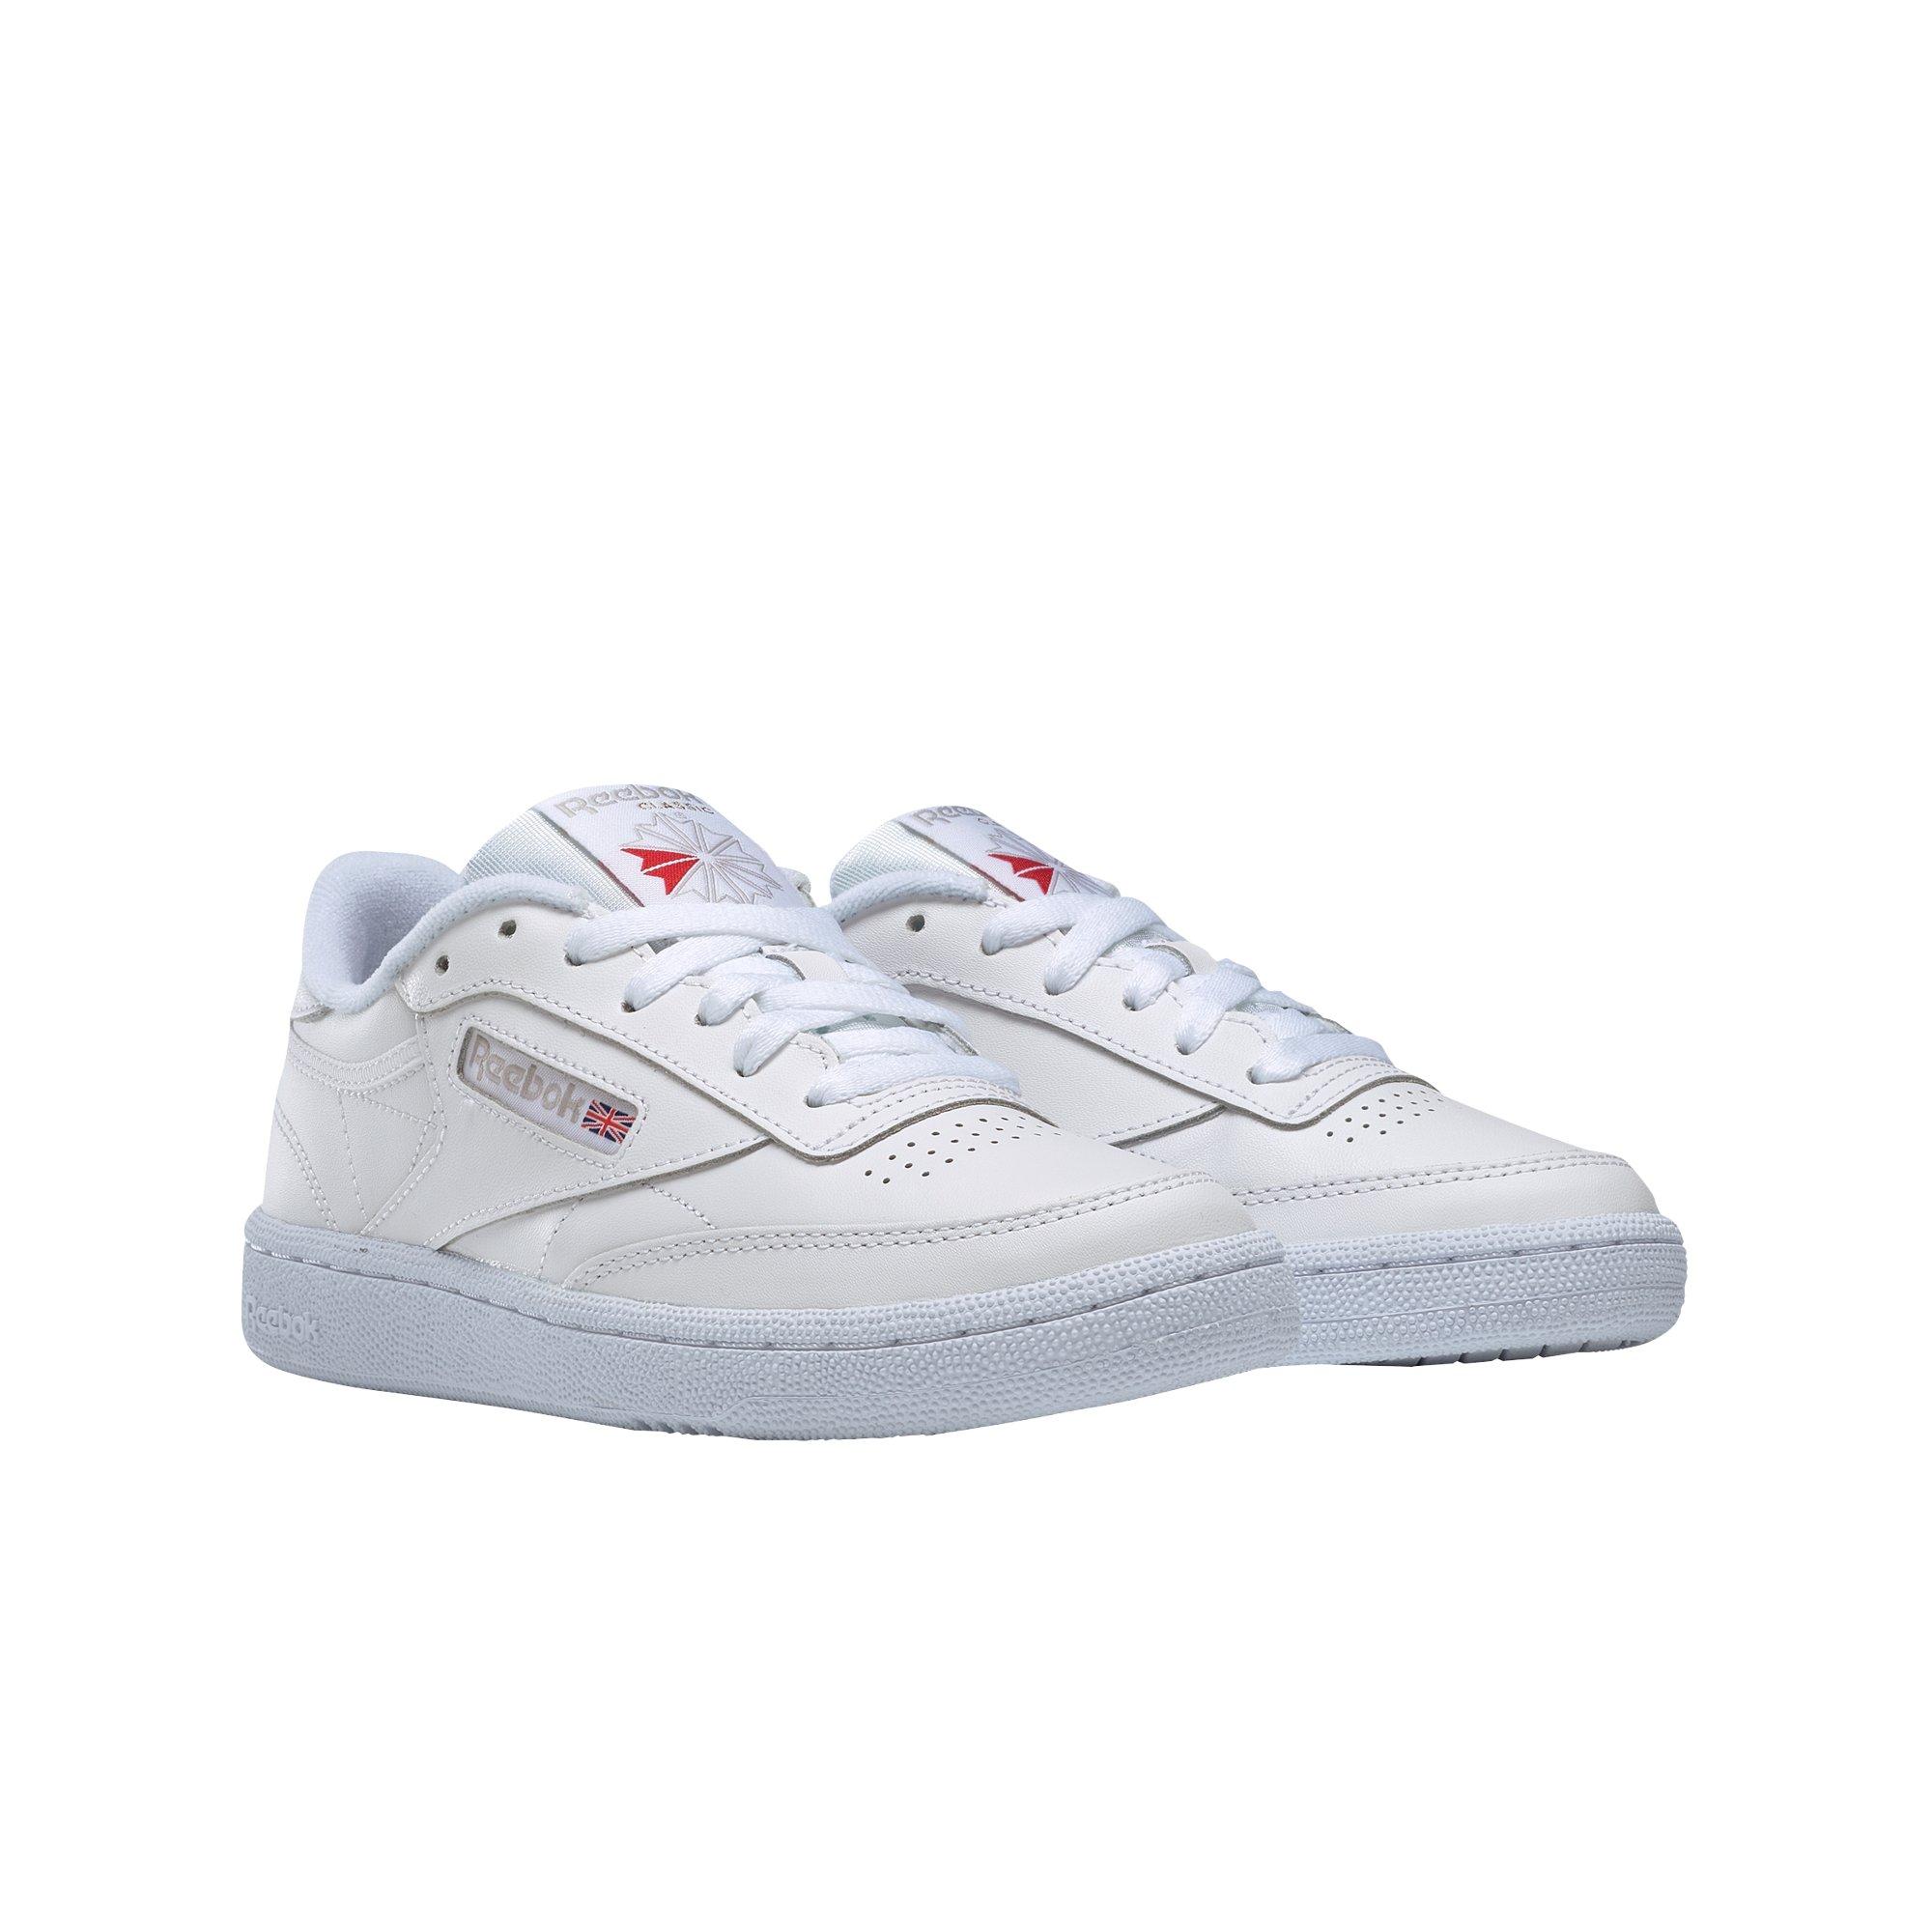 Reebok Club 85 "White/Grey" Shoe